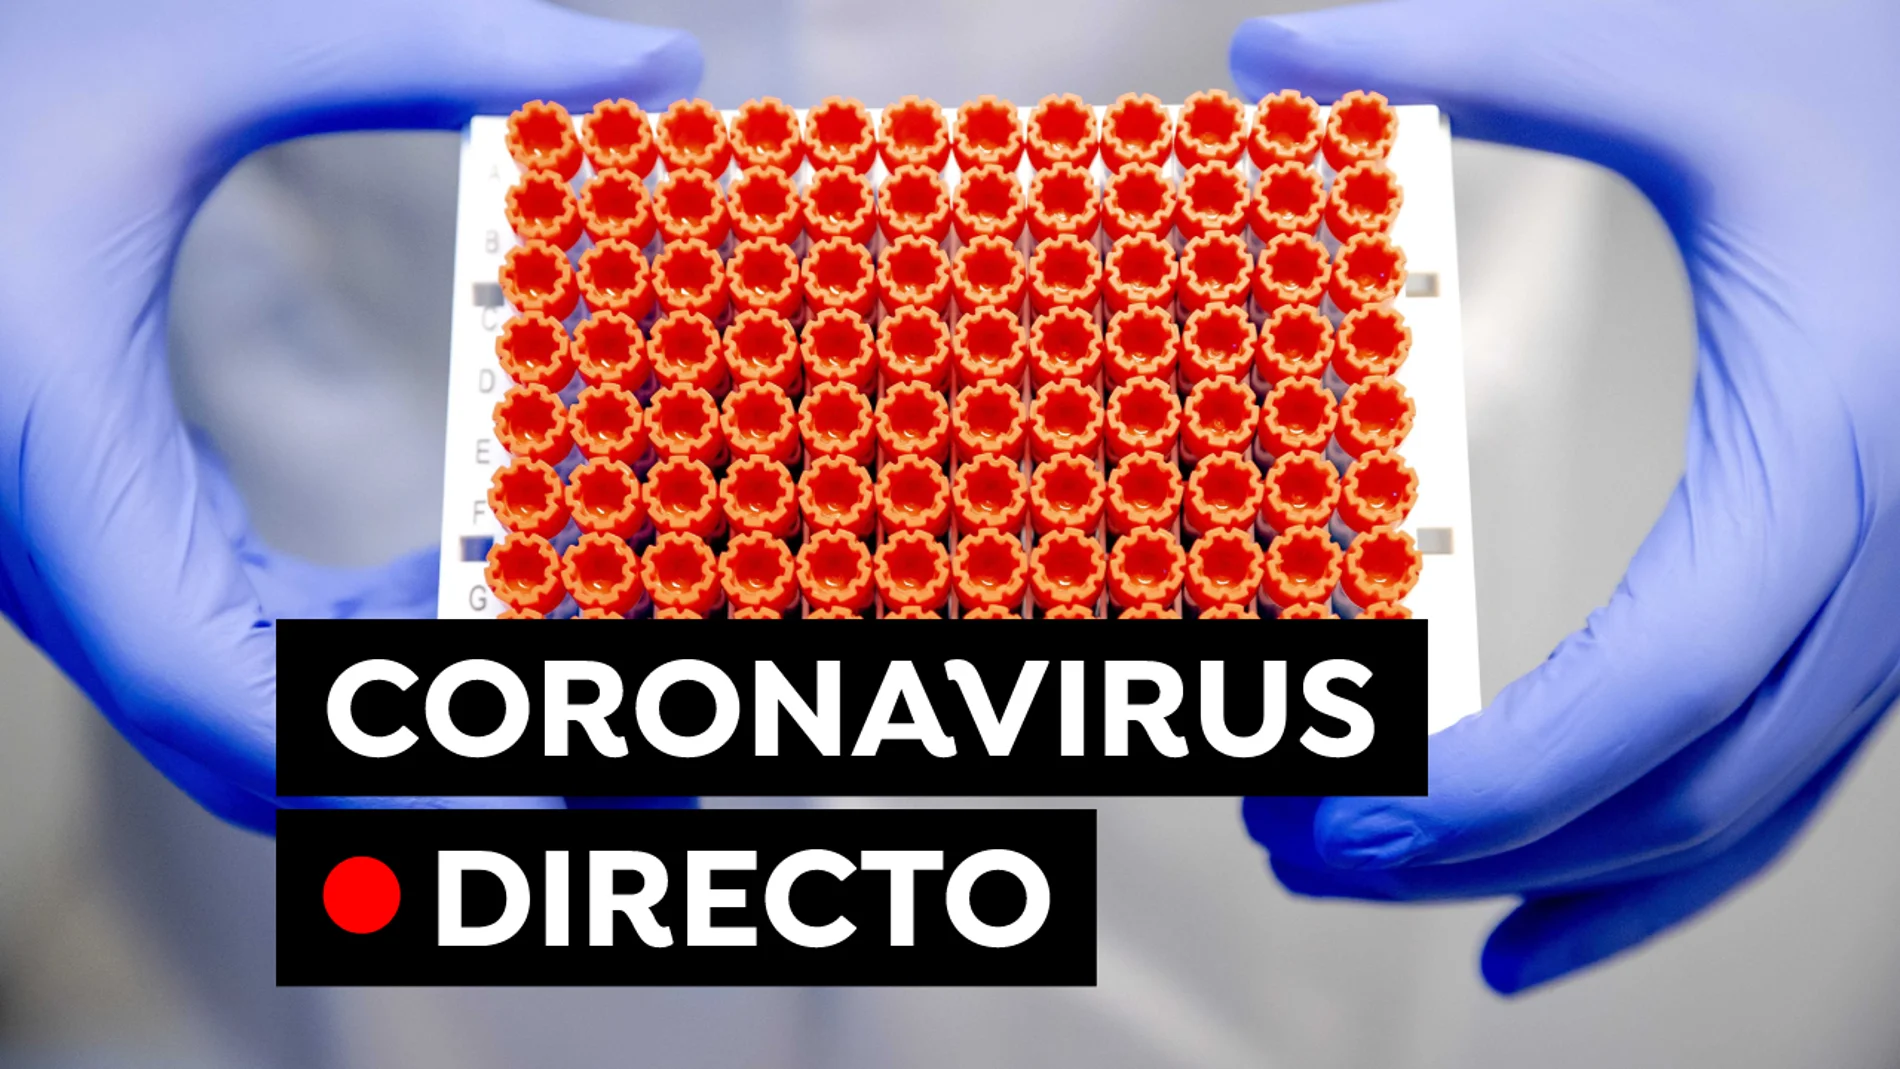 COVID-19 hoy: Vacuna covid y nuevas restricciones por coronavirus hoy, en directo